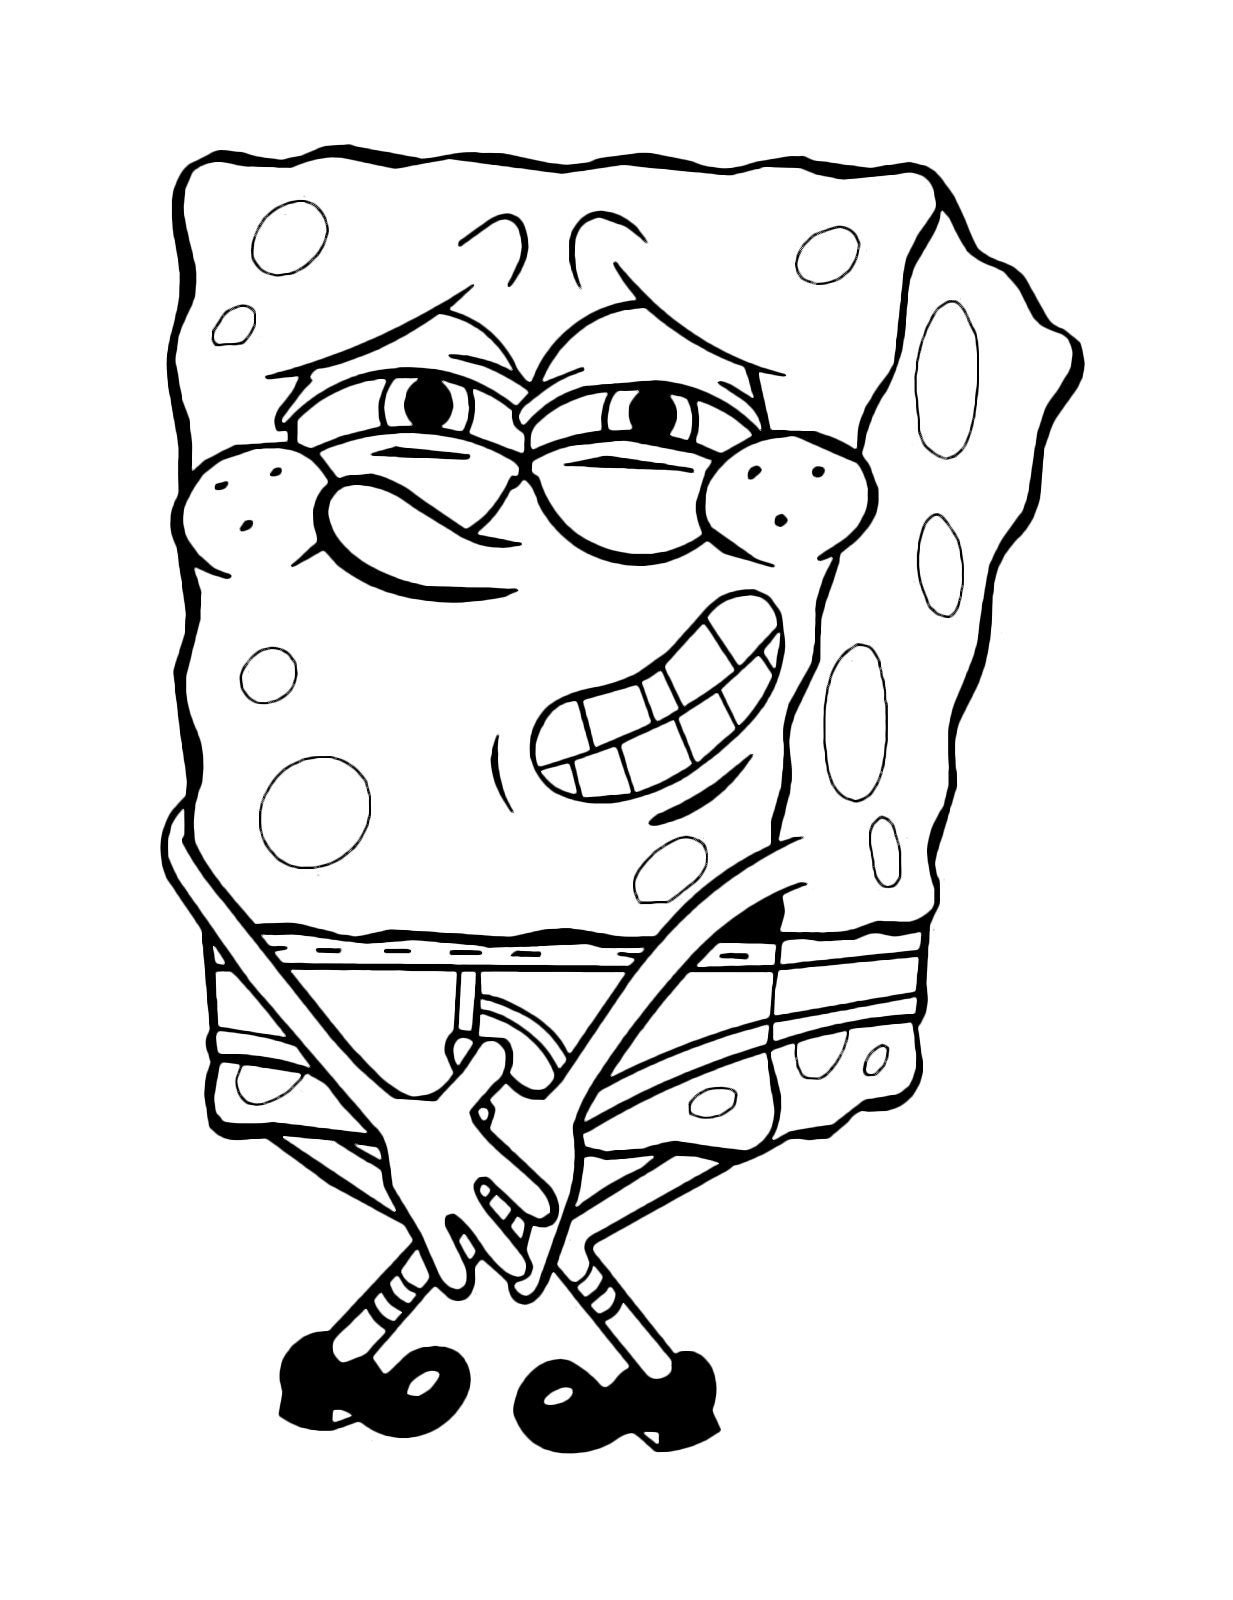 SpongeBob - SpongeBob keeps peeing